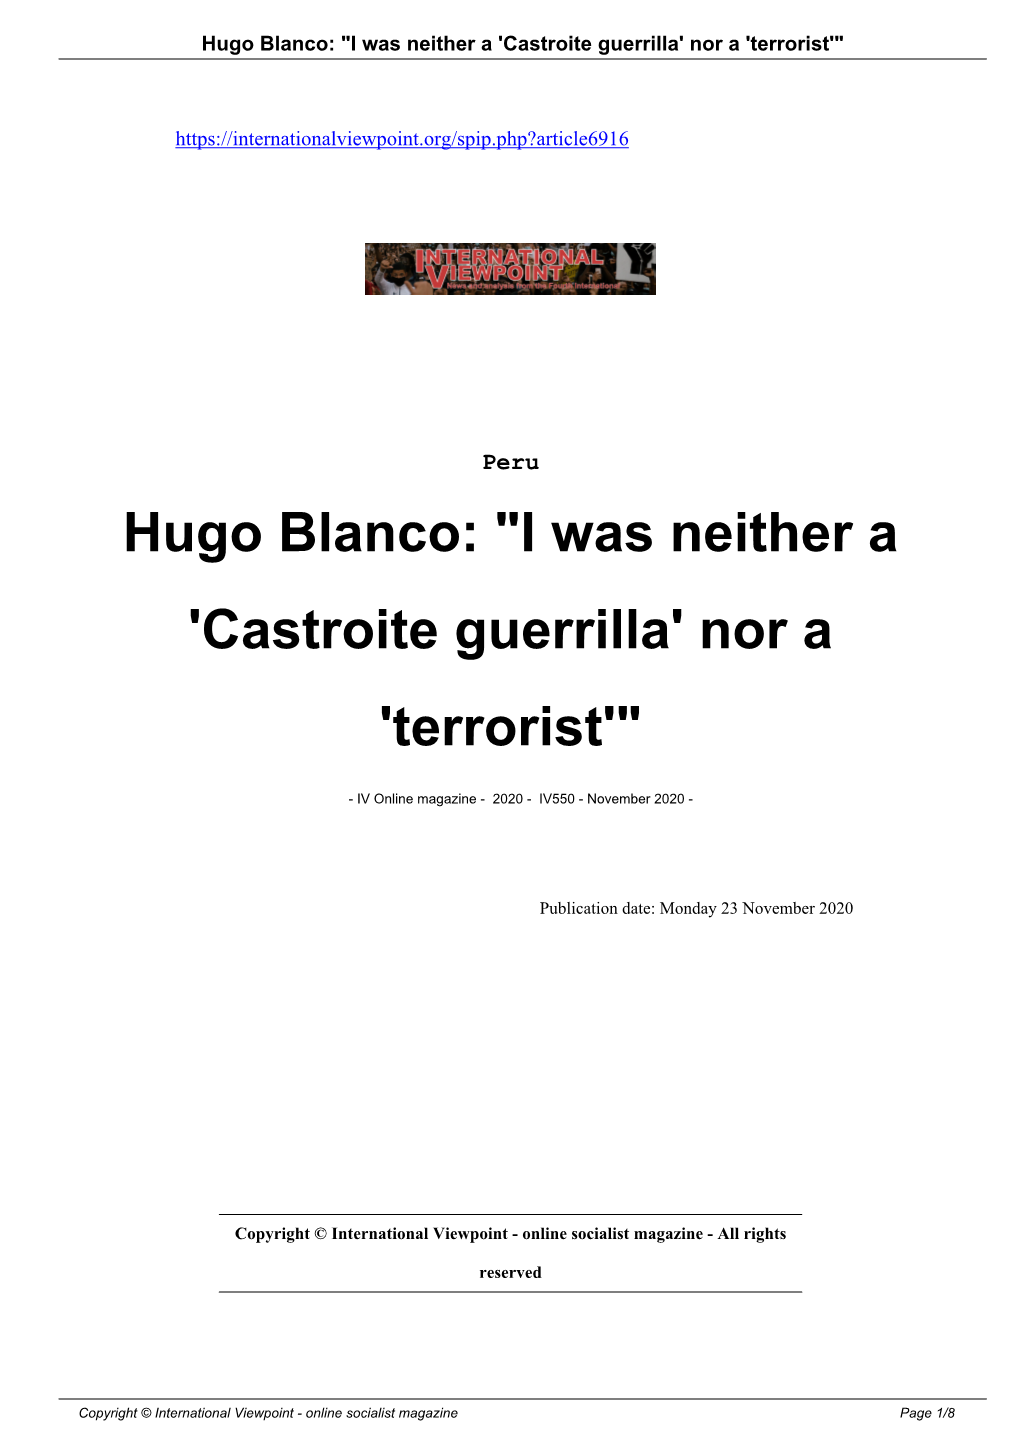 Hugo Blanco: "I Was Neither a 'Castroite Guerrilla' Nor a 'Terrorist'"